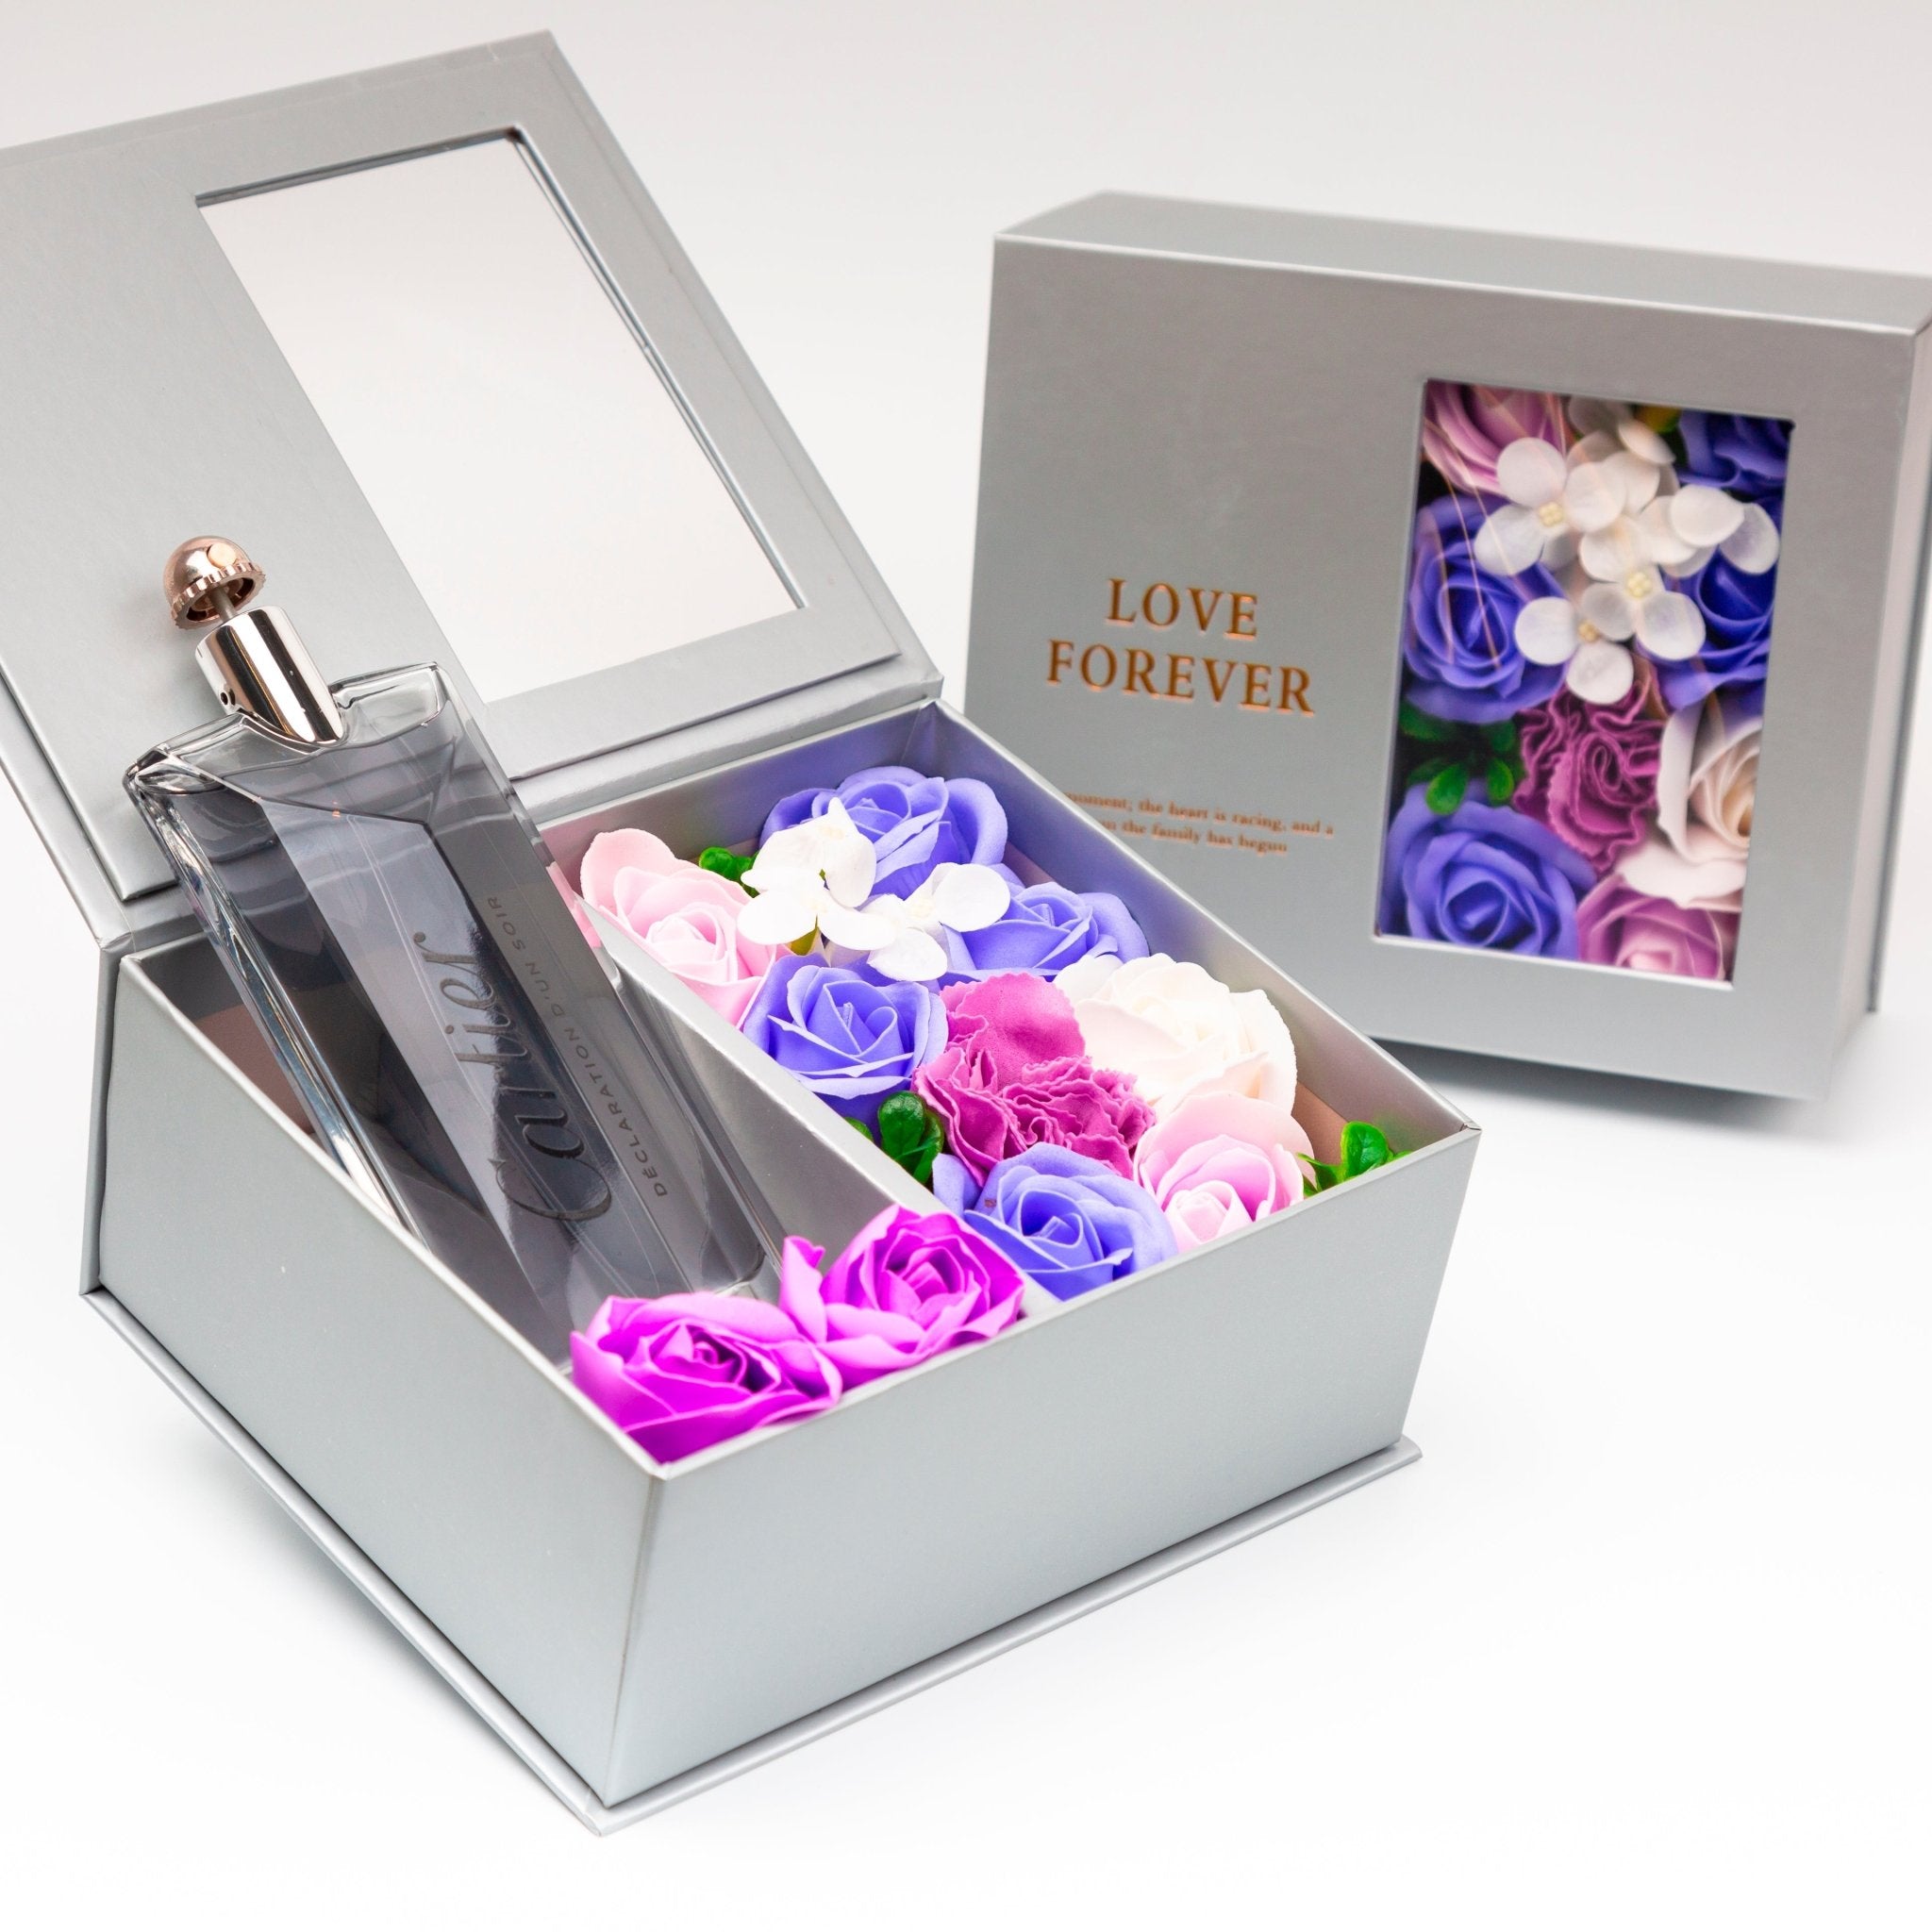 Flower Box - Perfume Gift For Men 9 - #shoFlower Box - Perfume Gift For Men 9p_name#Flower Box - Perfume Gift For Men 9Gift Boxes & TinsTakreemTakreem.joMenPerfumeFlower Box - Perfume Gift For Men 9 - Takreem.jo